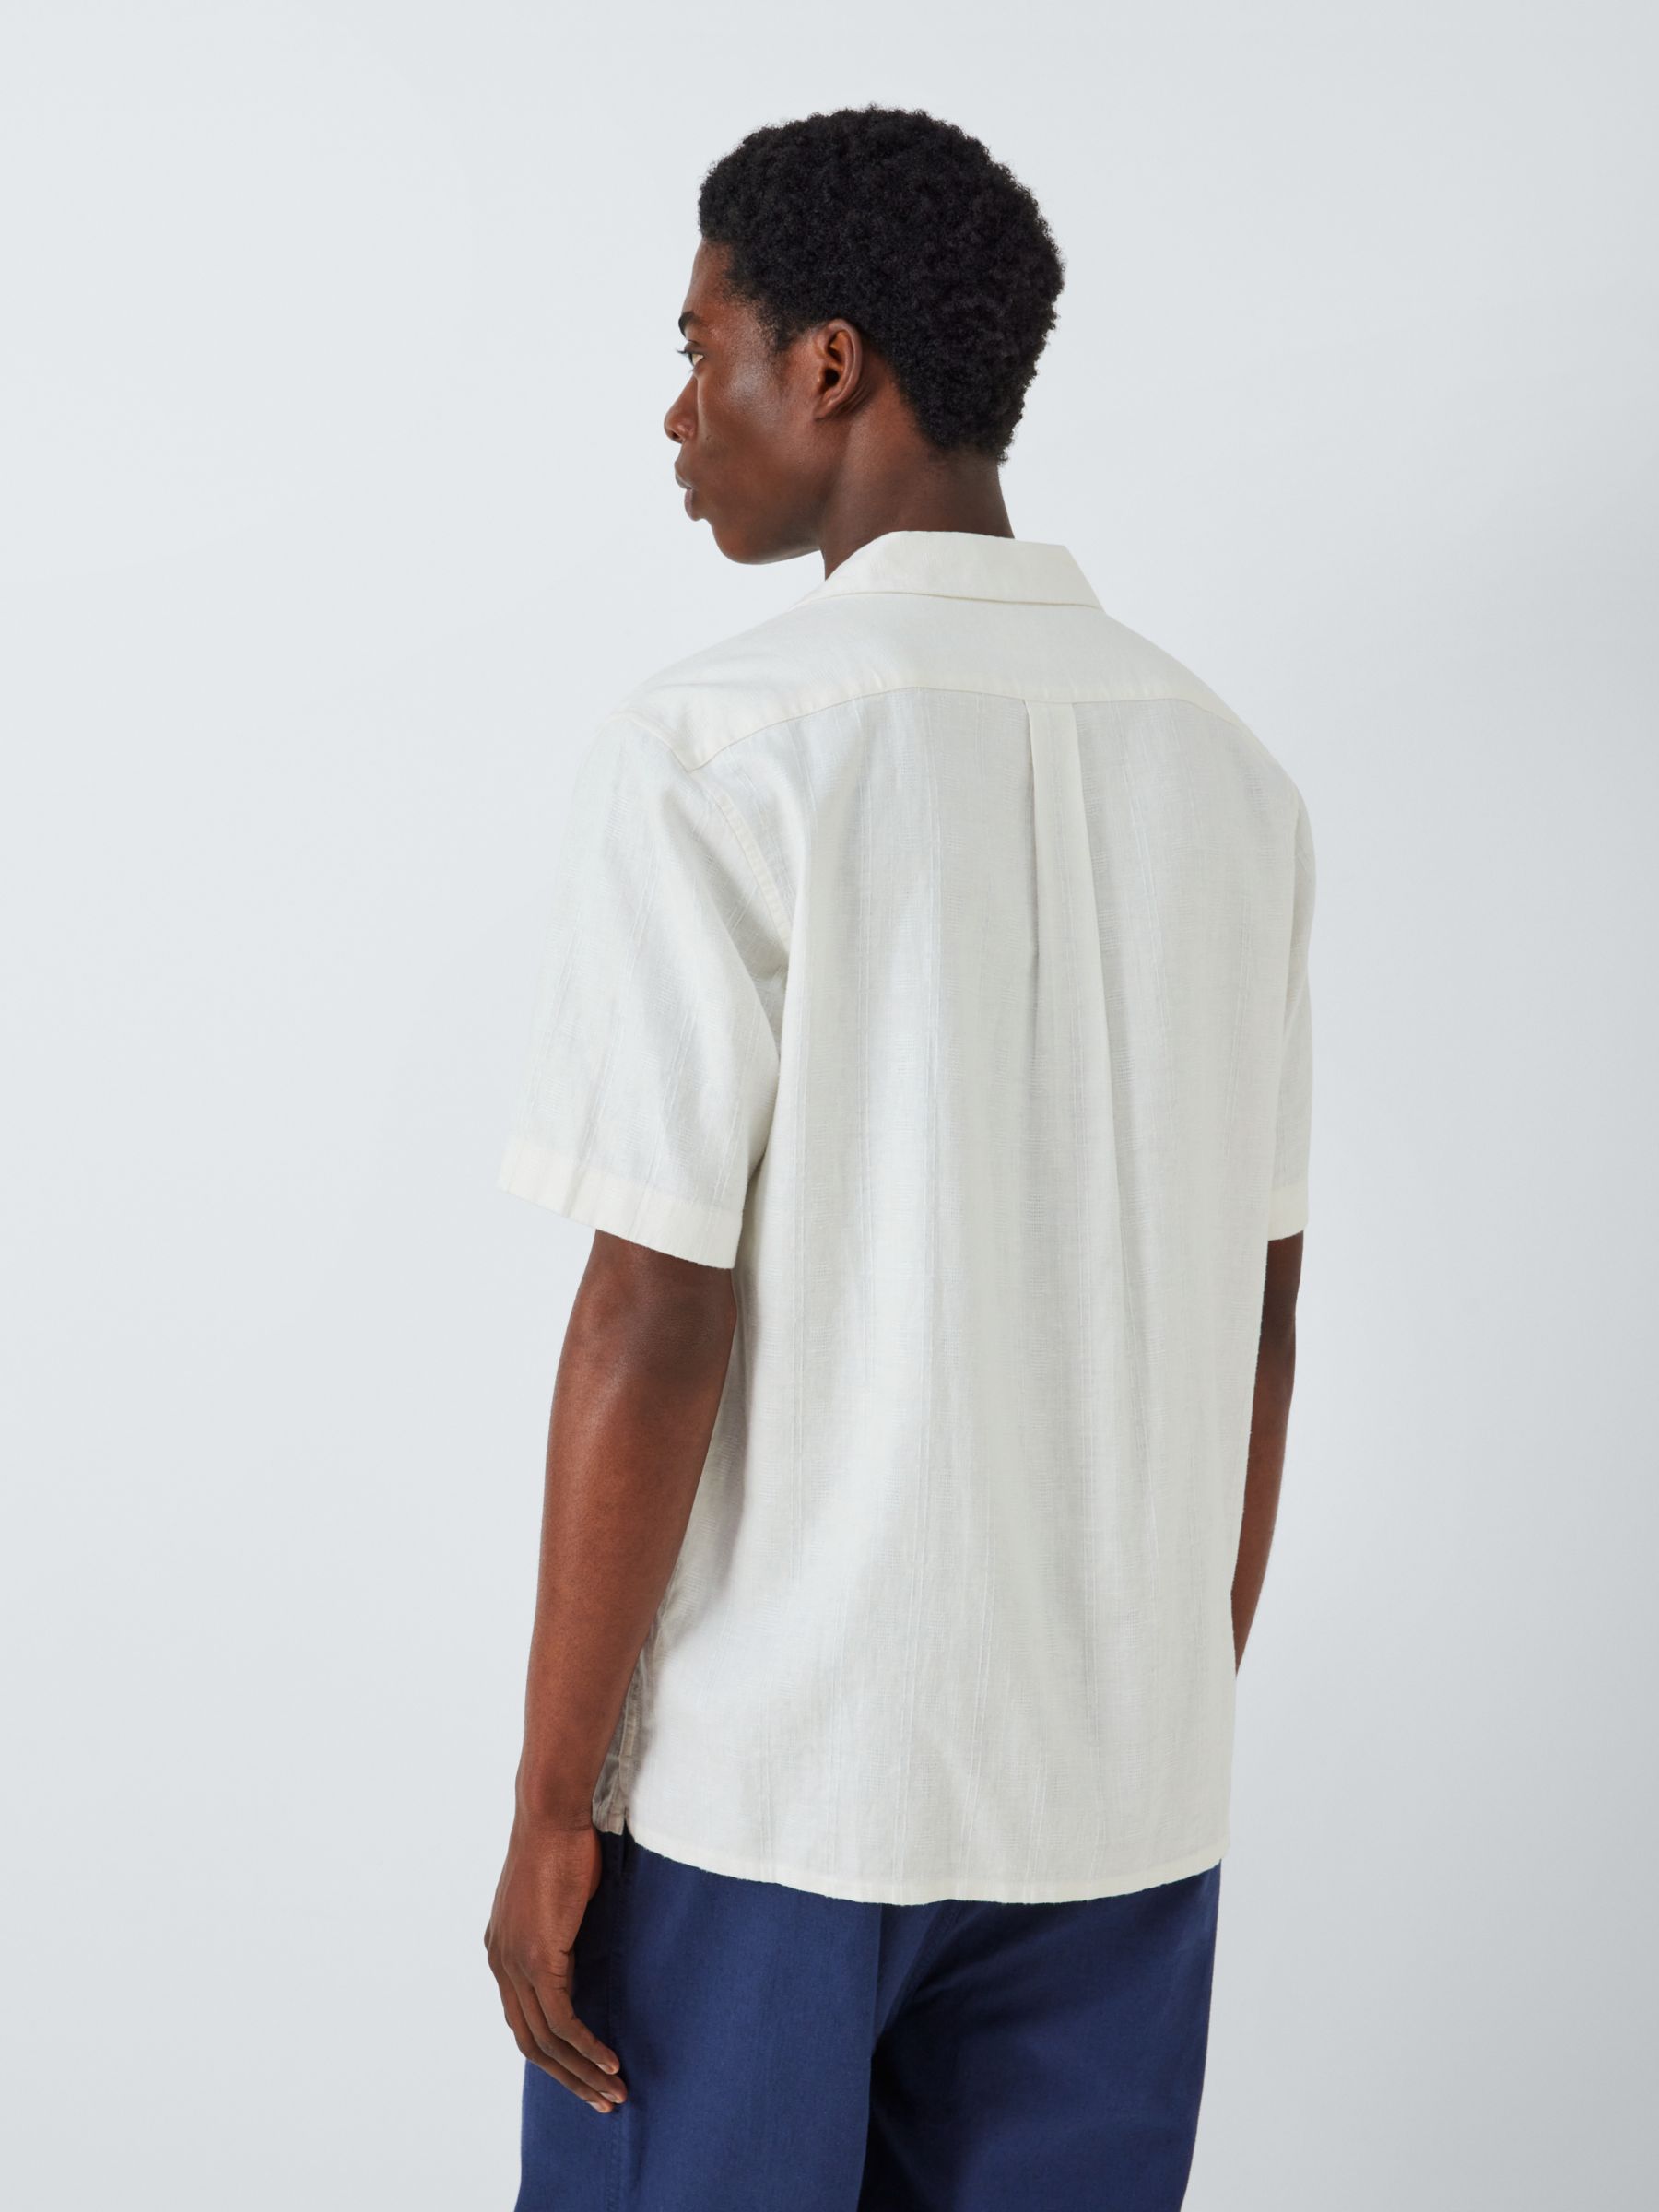 Buy John Lewis Short Sleeve Textured Linen Blend Shirt, Ecru Online at johnlewis.com